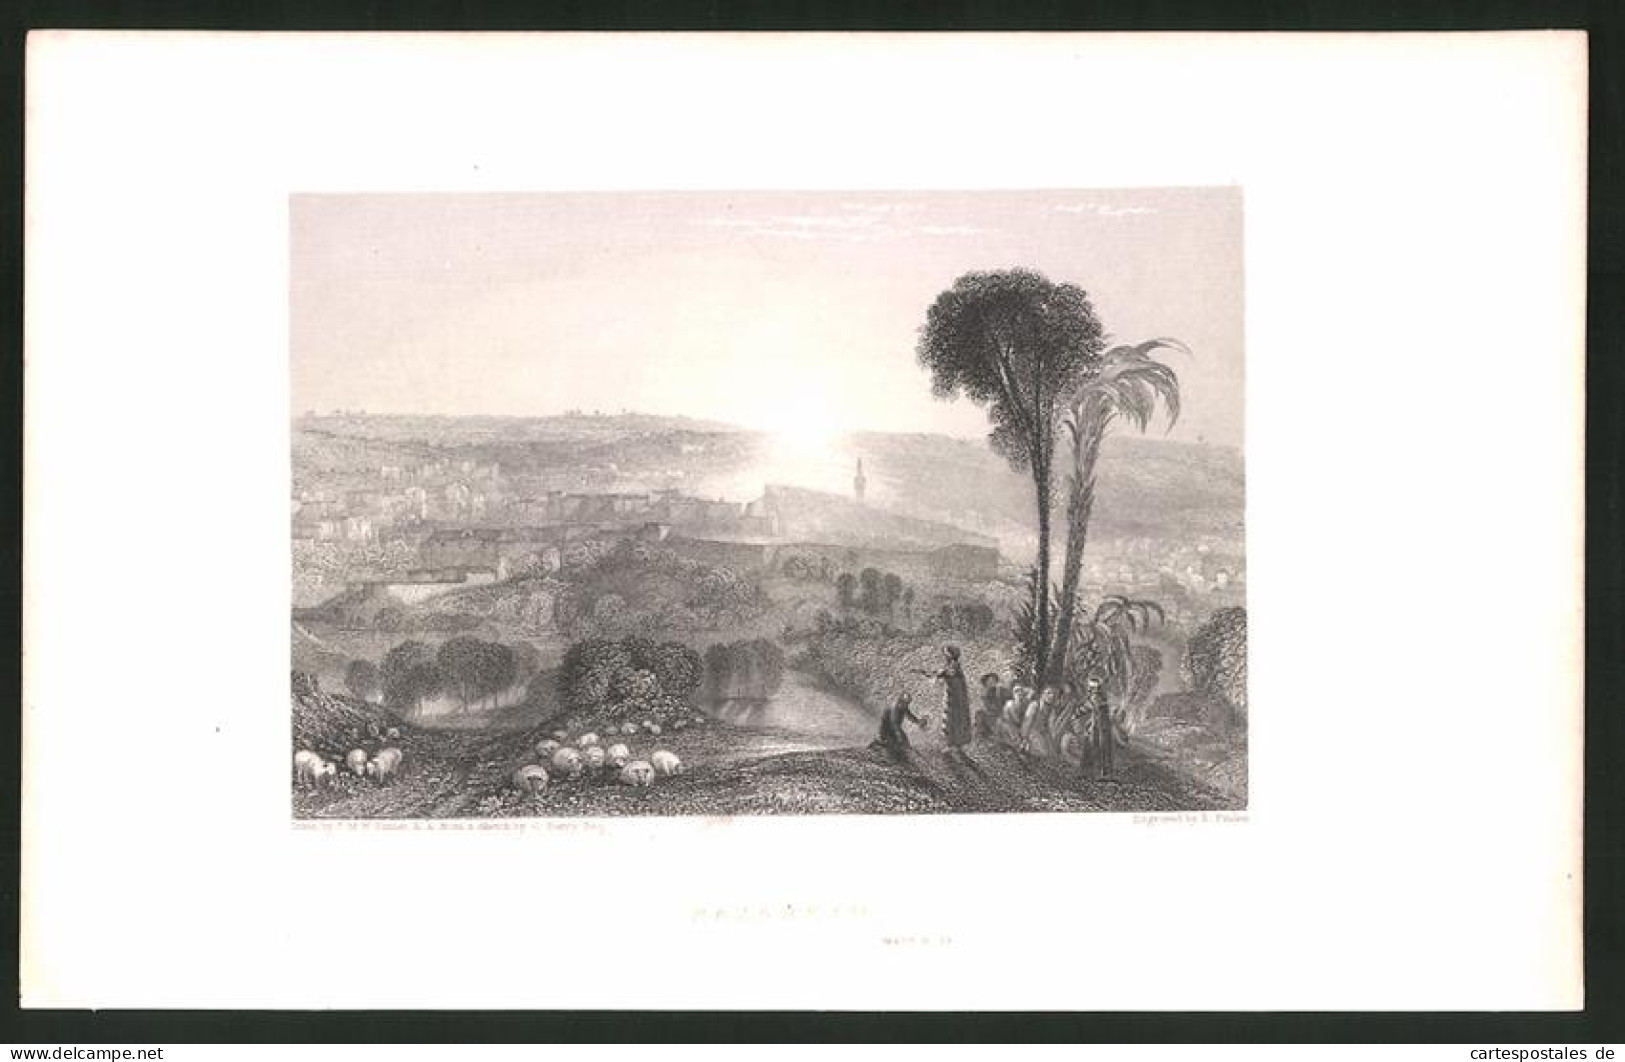 Stahlstich Nazareth, Stadt Im Sonnenuntergang, Stahlstich Von E. Finden Um 1835  - Prints & Engravings